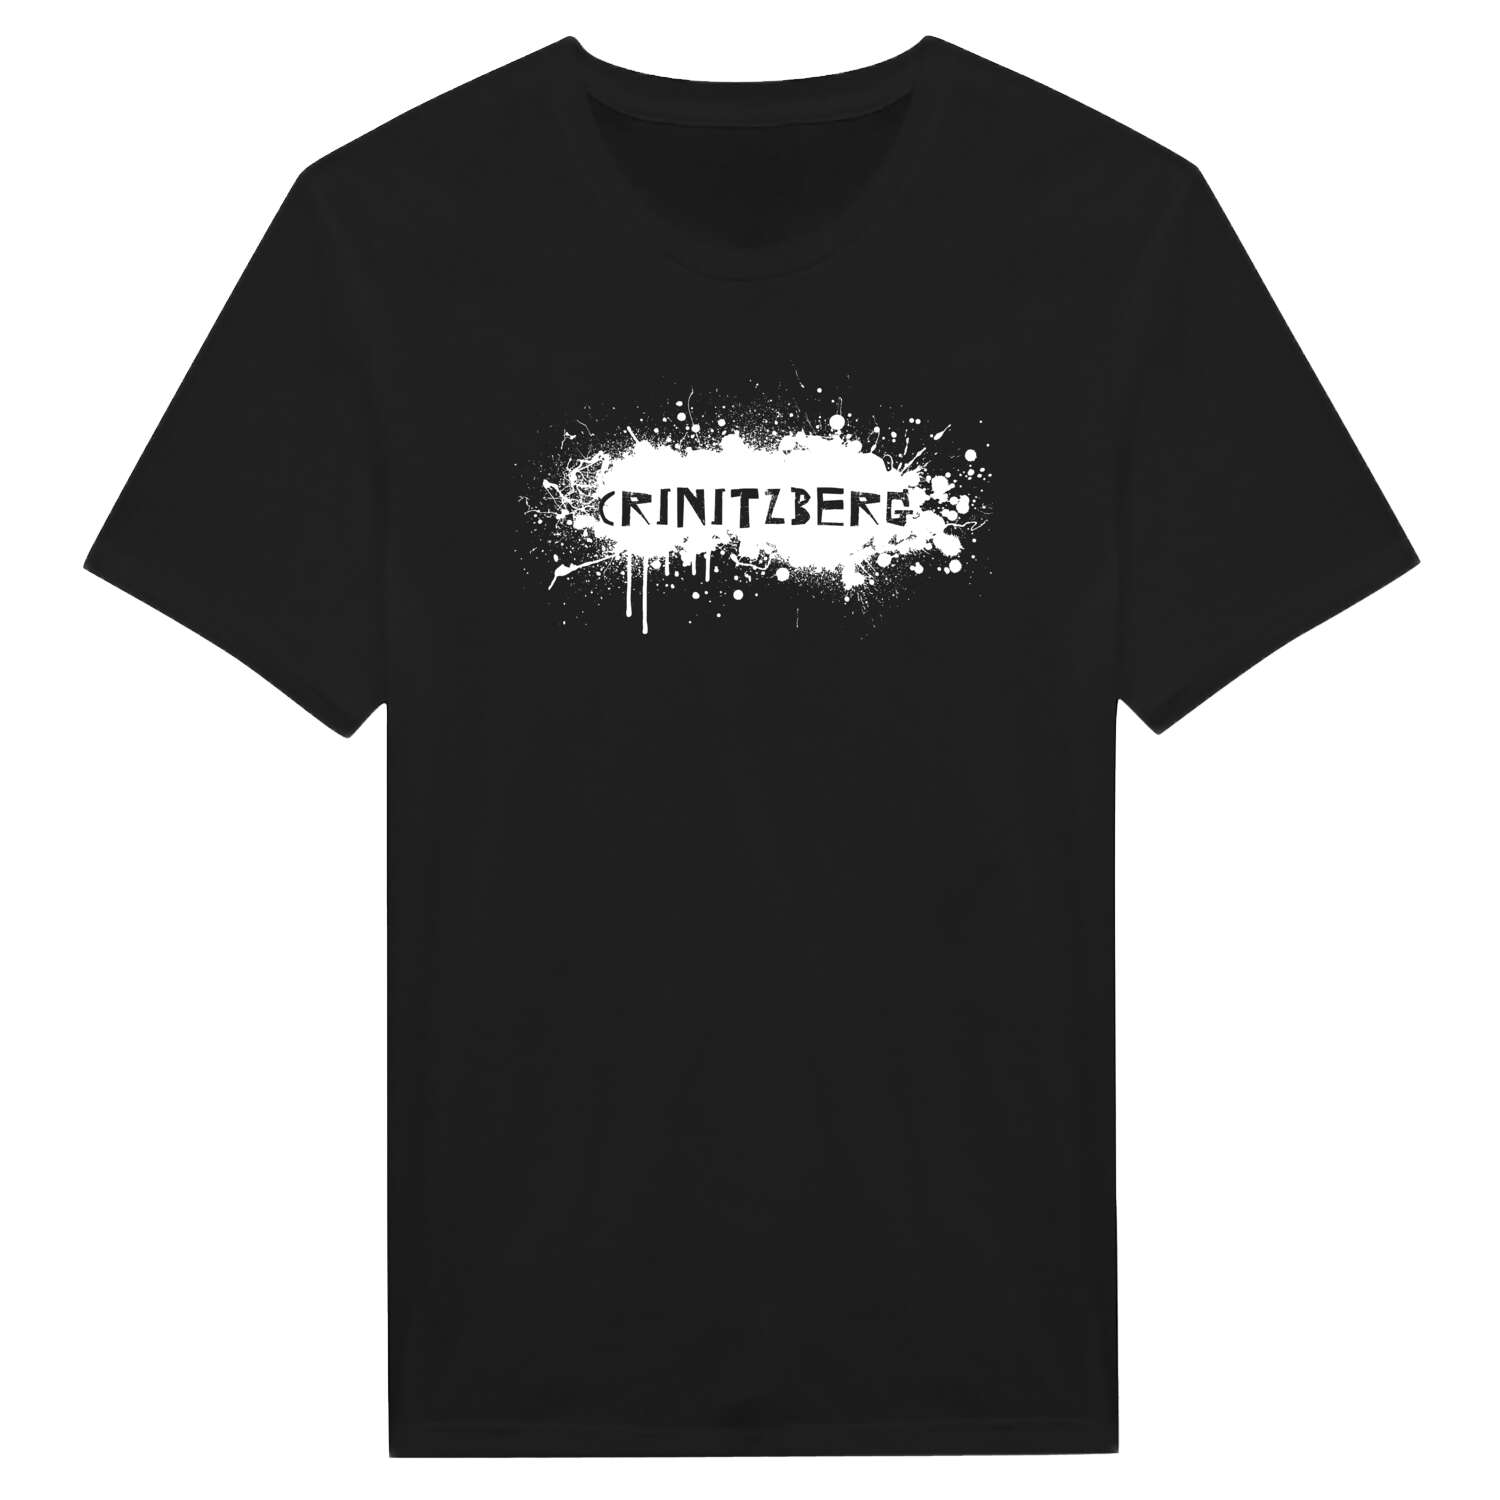 Crinitzberg T-Shirt »Paint Splash Punk«